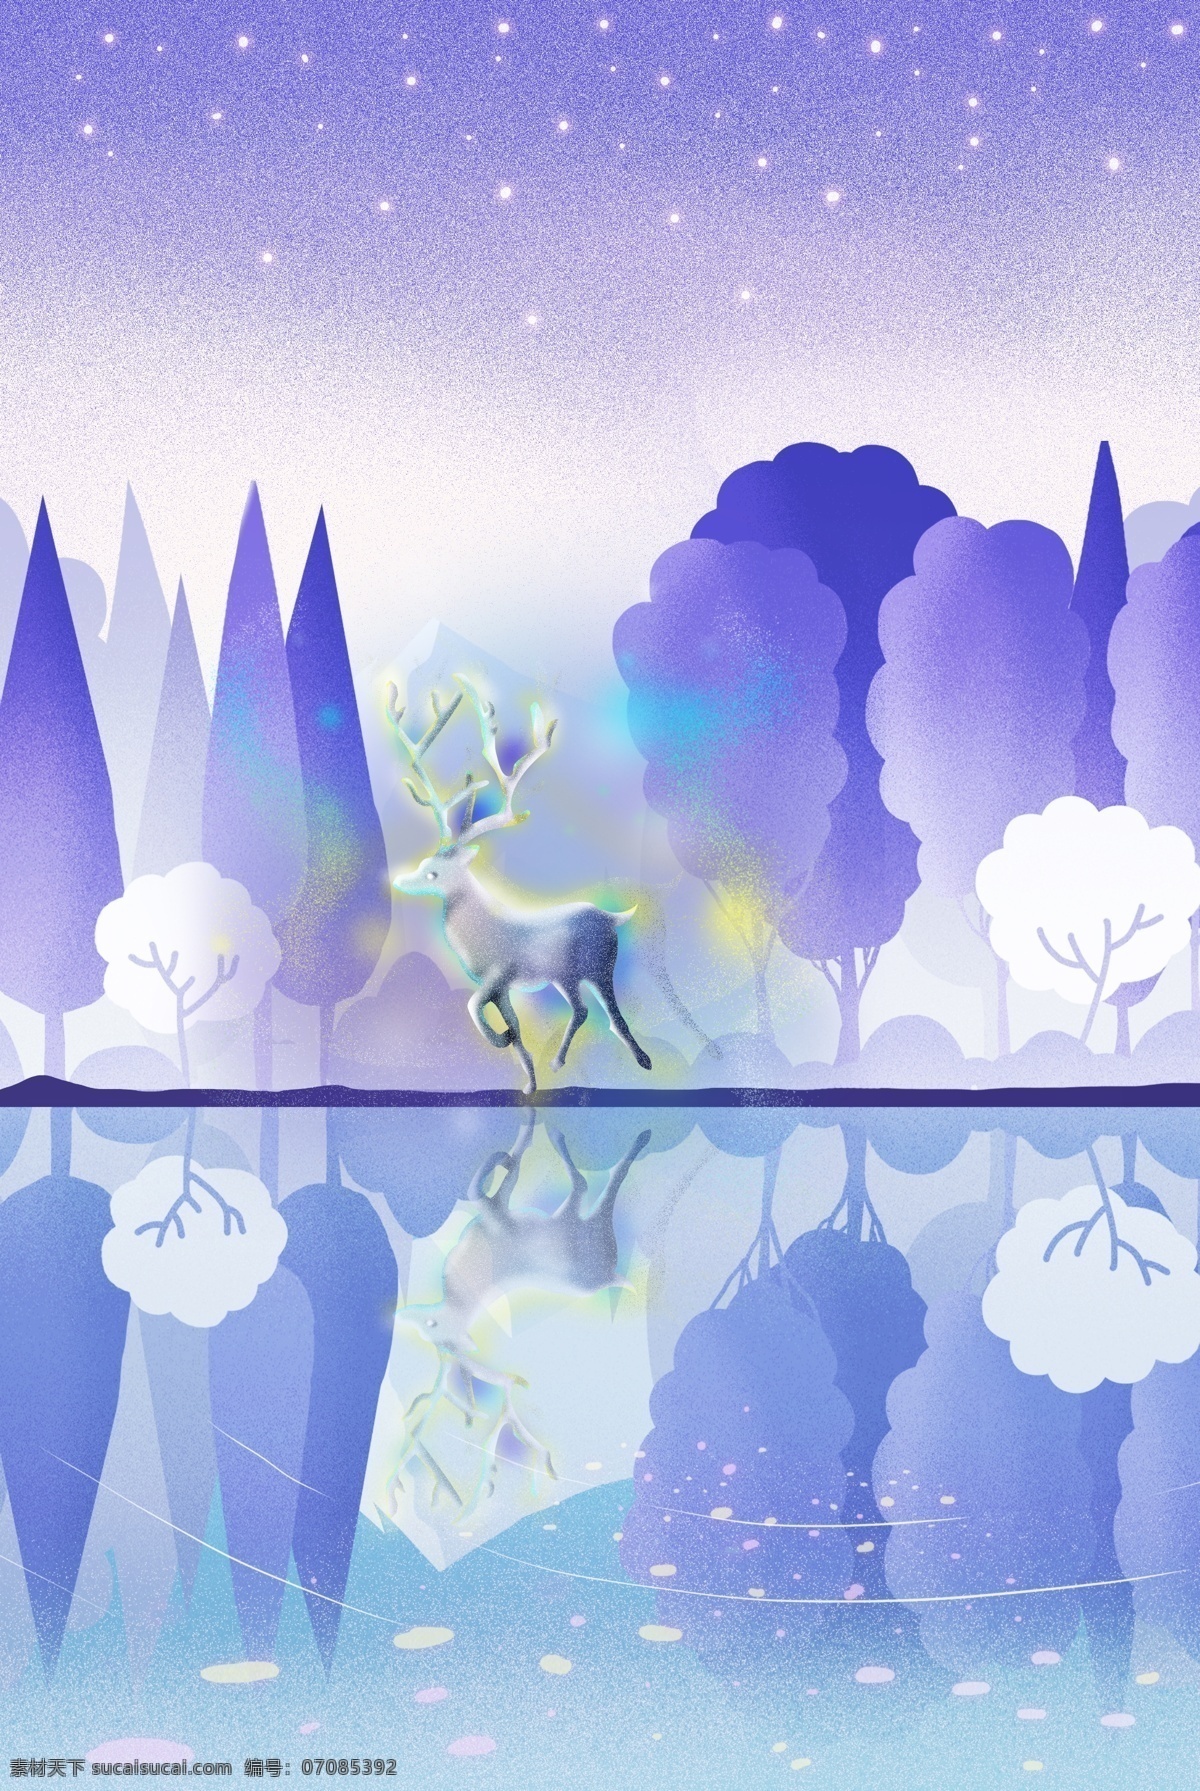 梦幻 小鹿 穿过 森林 海报 手绘 插画风 紫色 树木 河流